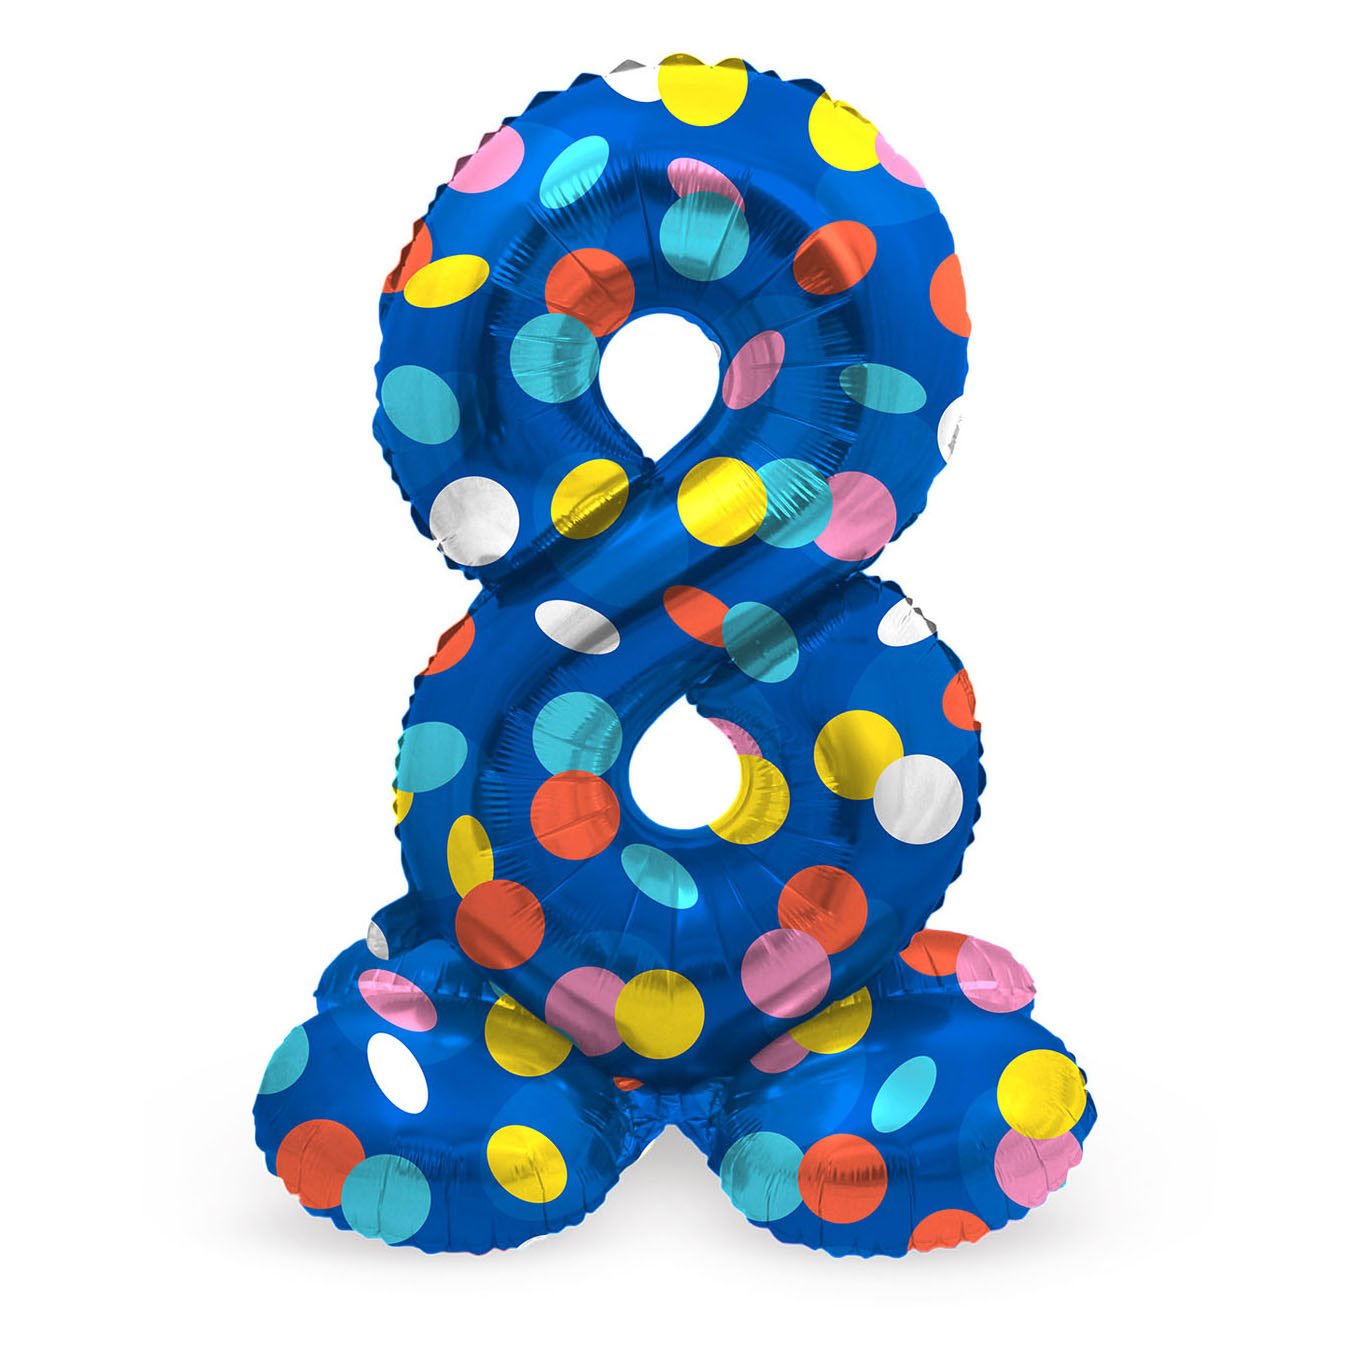 Ballon aluminium debout à pois colorés numéro 8 - 72 cm